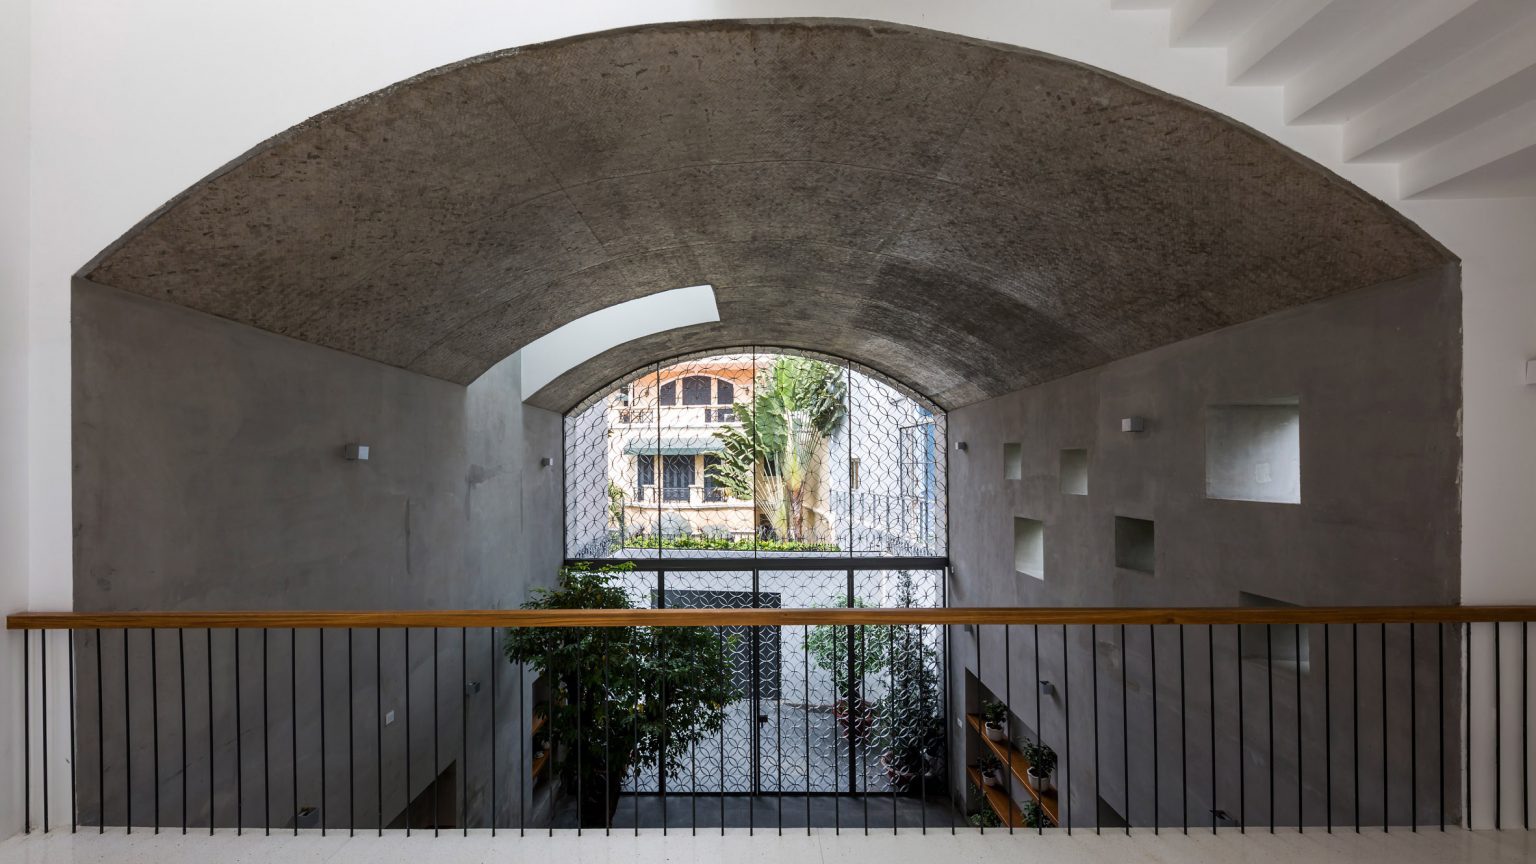 Nhà phố rộng 380 m2 với 3 phòng ngoài trời hình vòm độc đáo ở Sài Gòn - 1